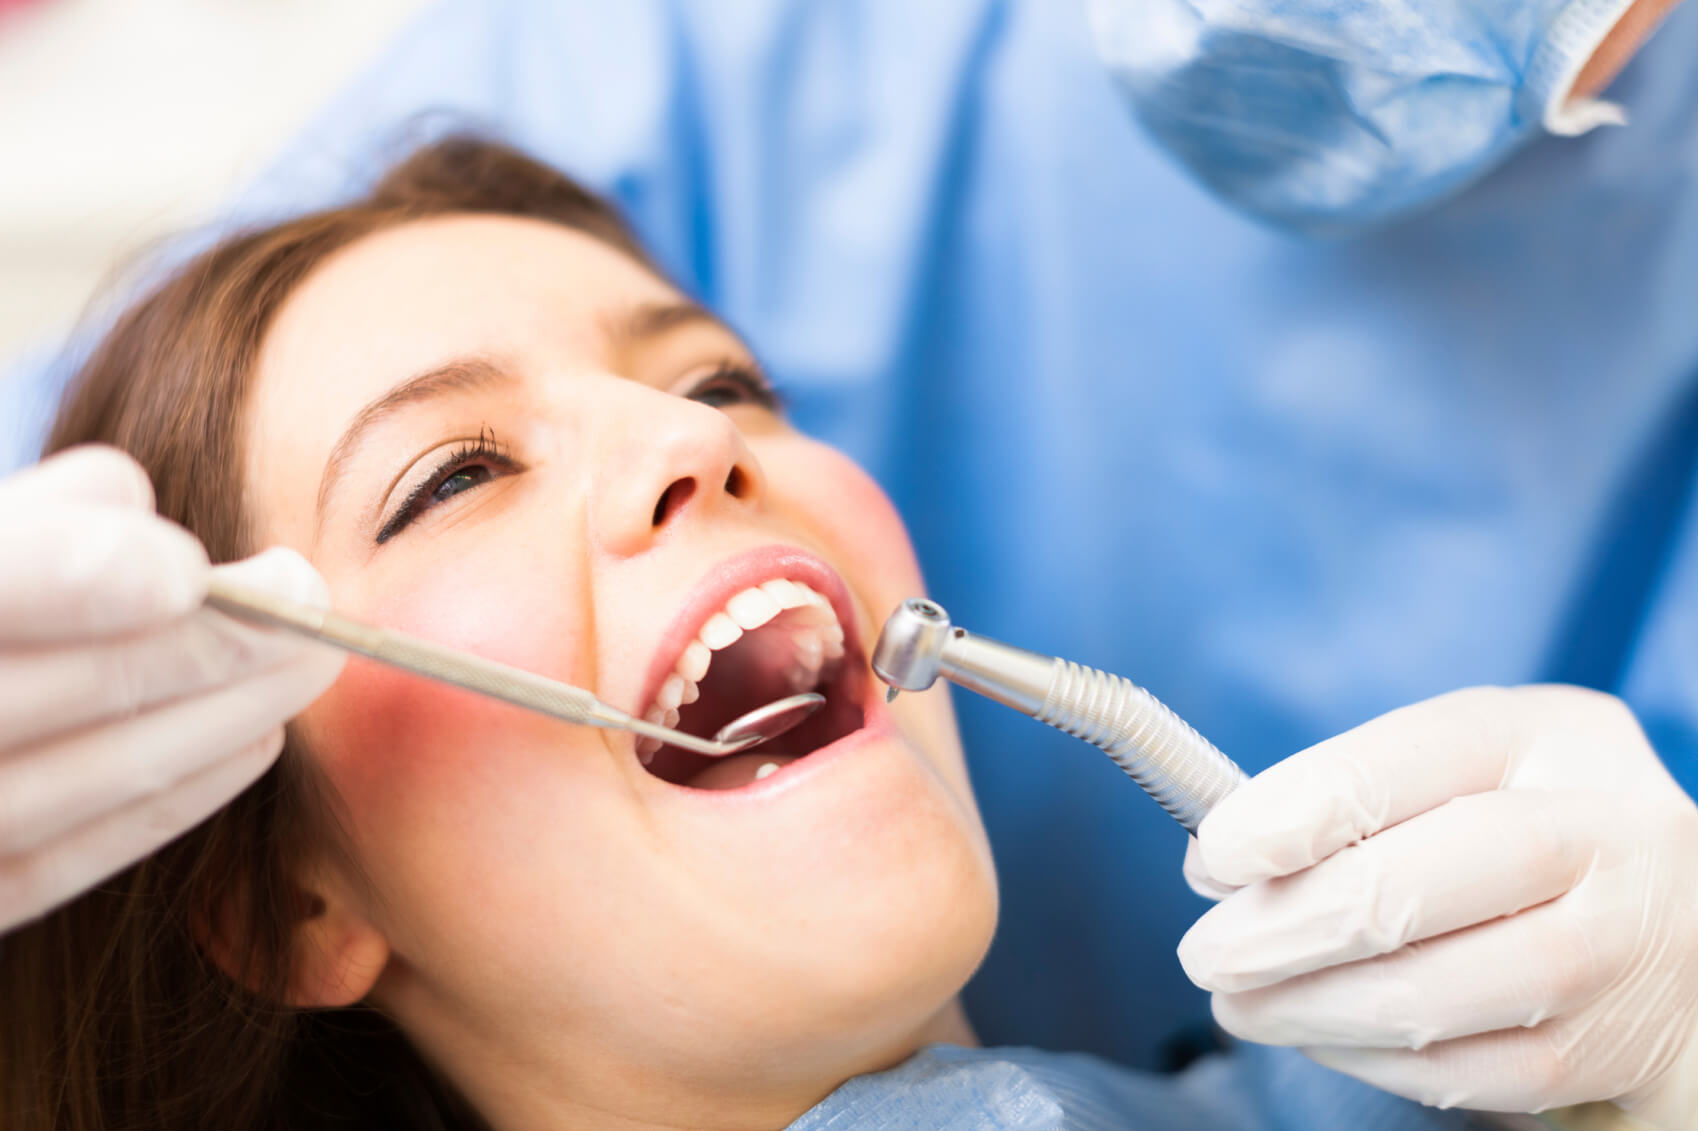 Cateva aspecte pe care trebuie sa le cunosti cand mergi la dentist